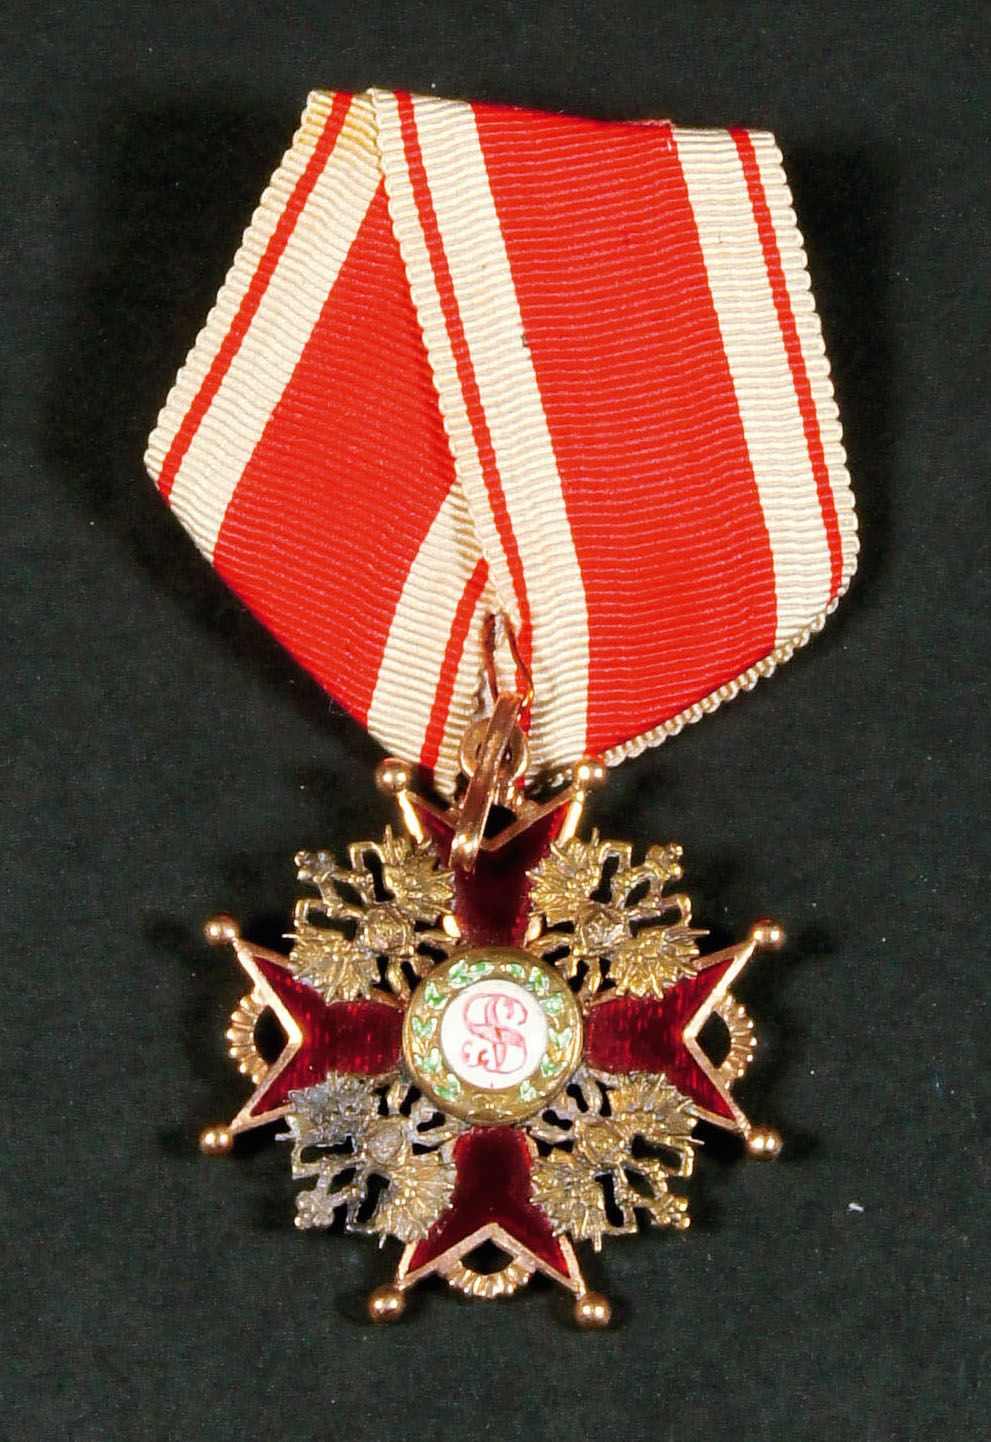 Null 圣斯坦尼斯拉勋章，三等平民勋章

黄金，红色珐琅。唛头:AK（Alexander Keibel），双头鹰和56号

赠送其勋章绶带。

高4,4厘米。&hellip;